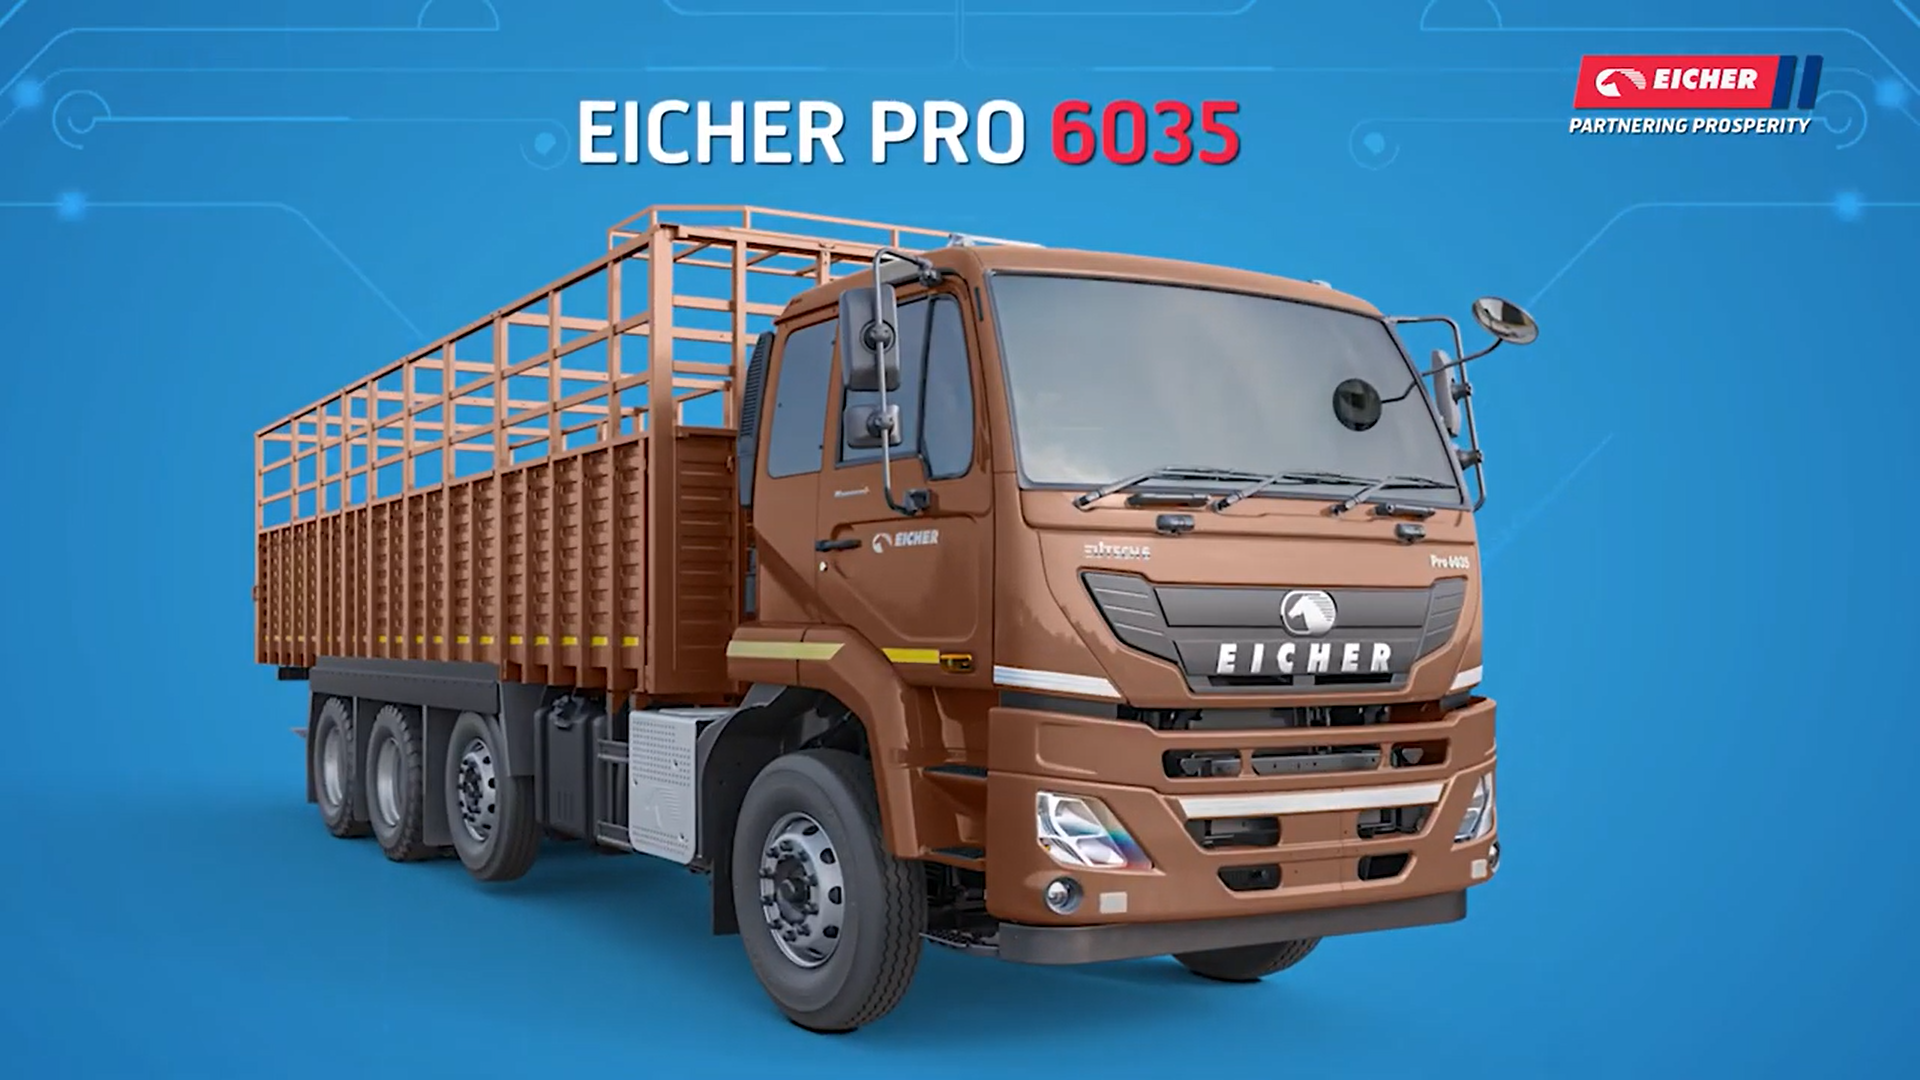 Know your Eicher BSVI Vehicle - Eicher Pro 6035